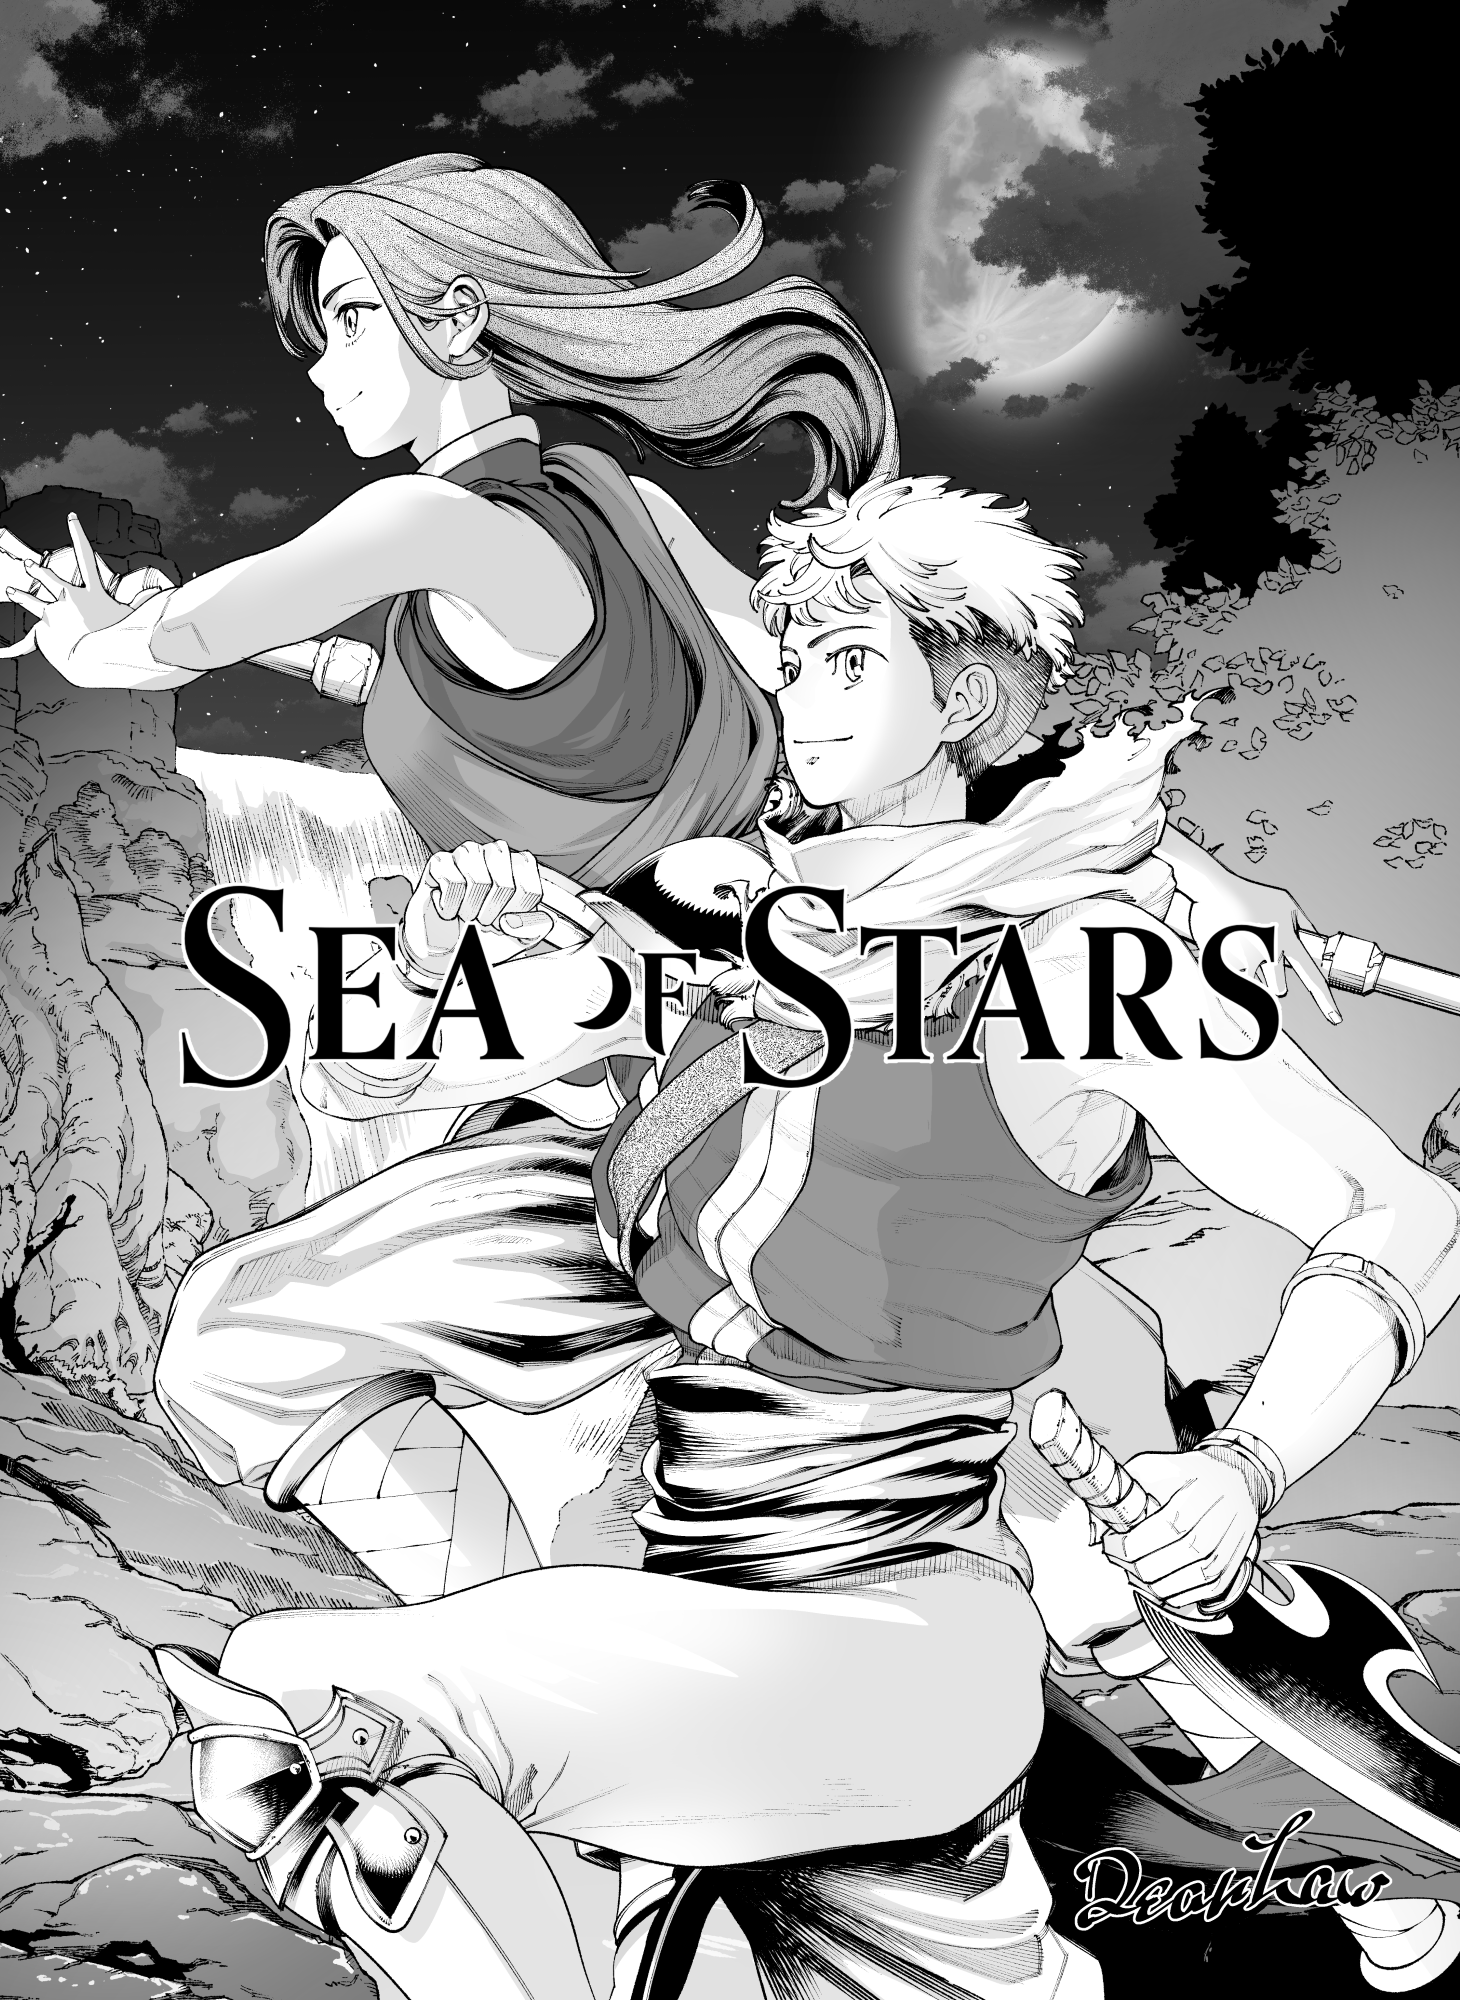 Sea of Stars - Fan Art